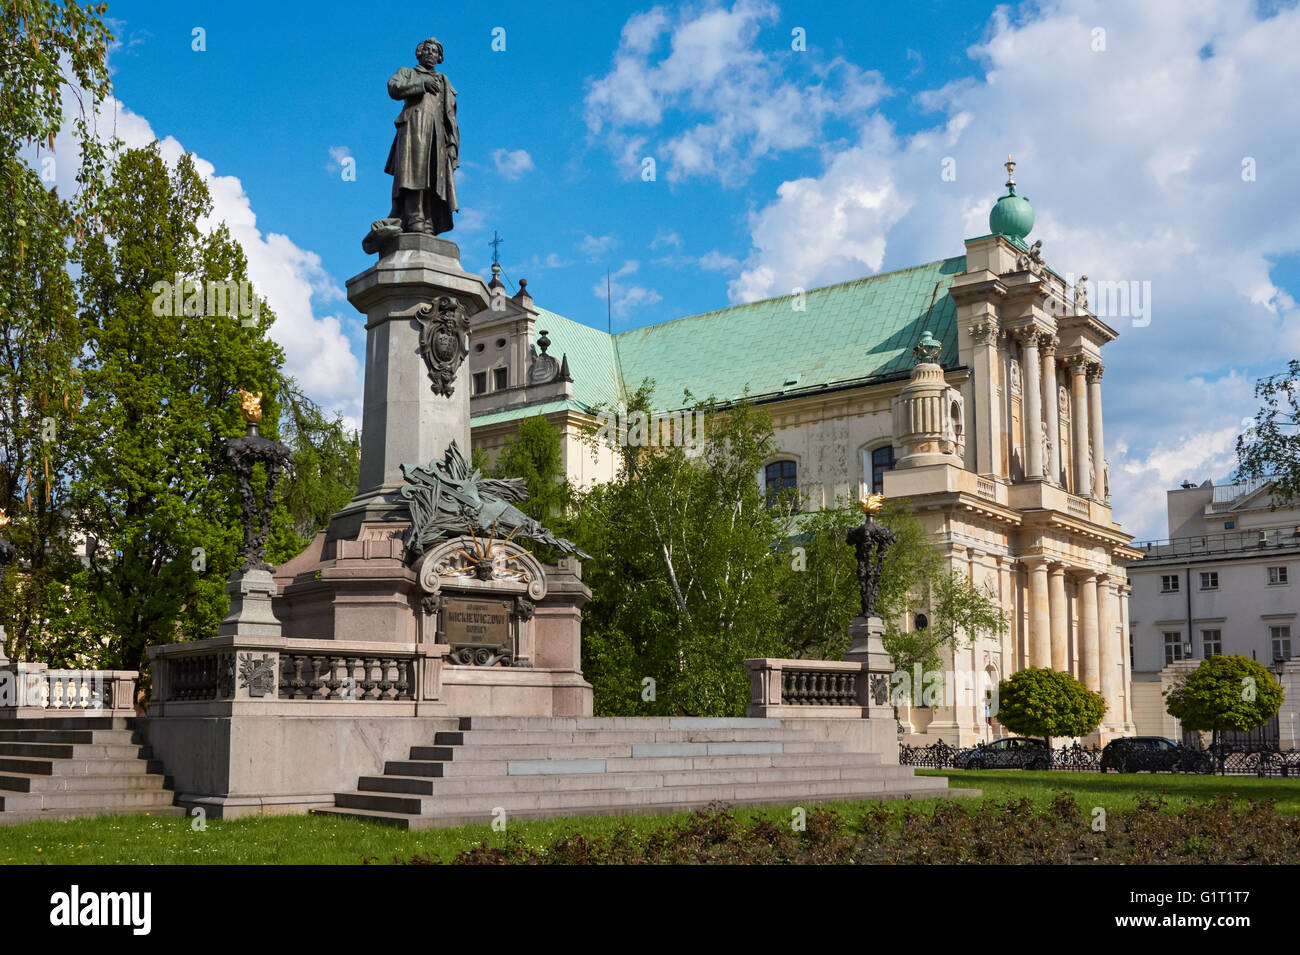 The Adam Mickiewicz Monument and the Carmelite Church on Krakowskie Przedmiescie street in Warsaw, Poland Stock Photo